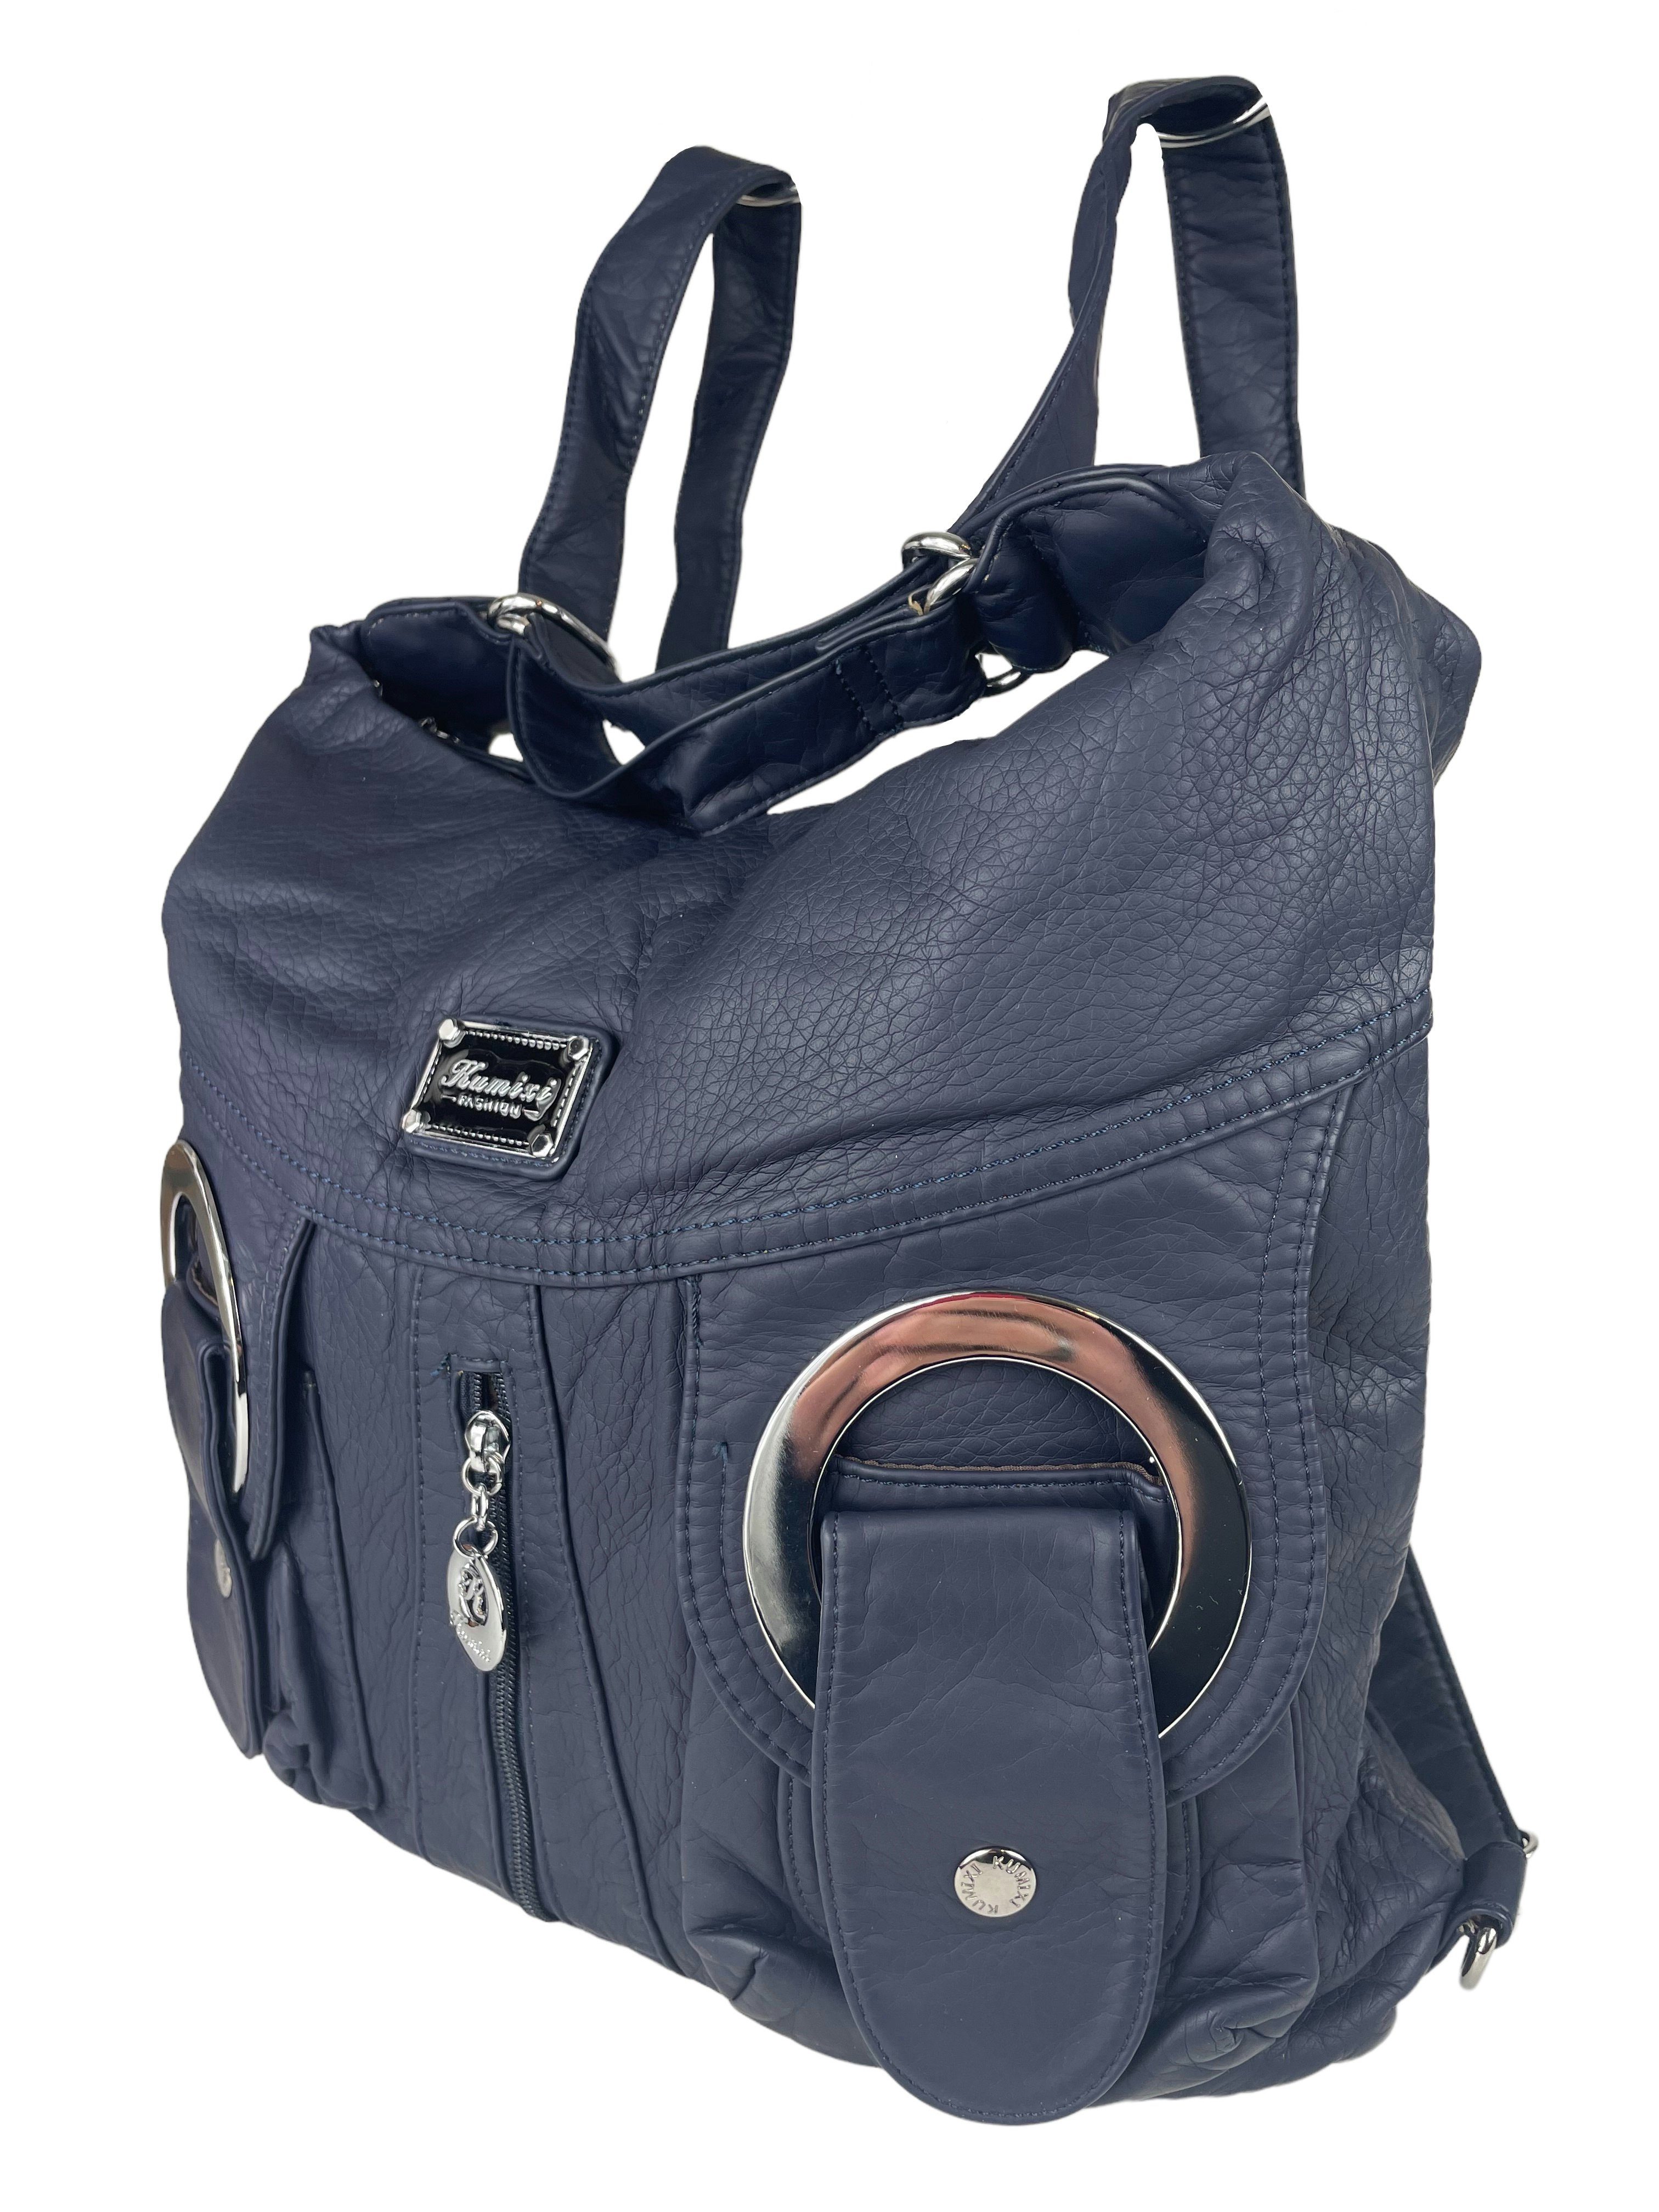 Taschen4life Schultertasche Rucksacktasche marine Schulterriemen, Tasche verstellbarer oder Schultertasche Rucksack oder als Rucksack, W6802 Multifunktionstasche, tragbar